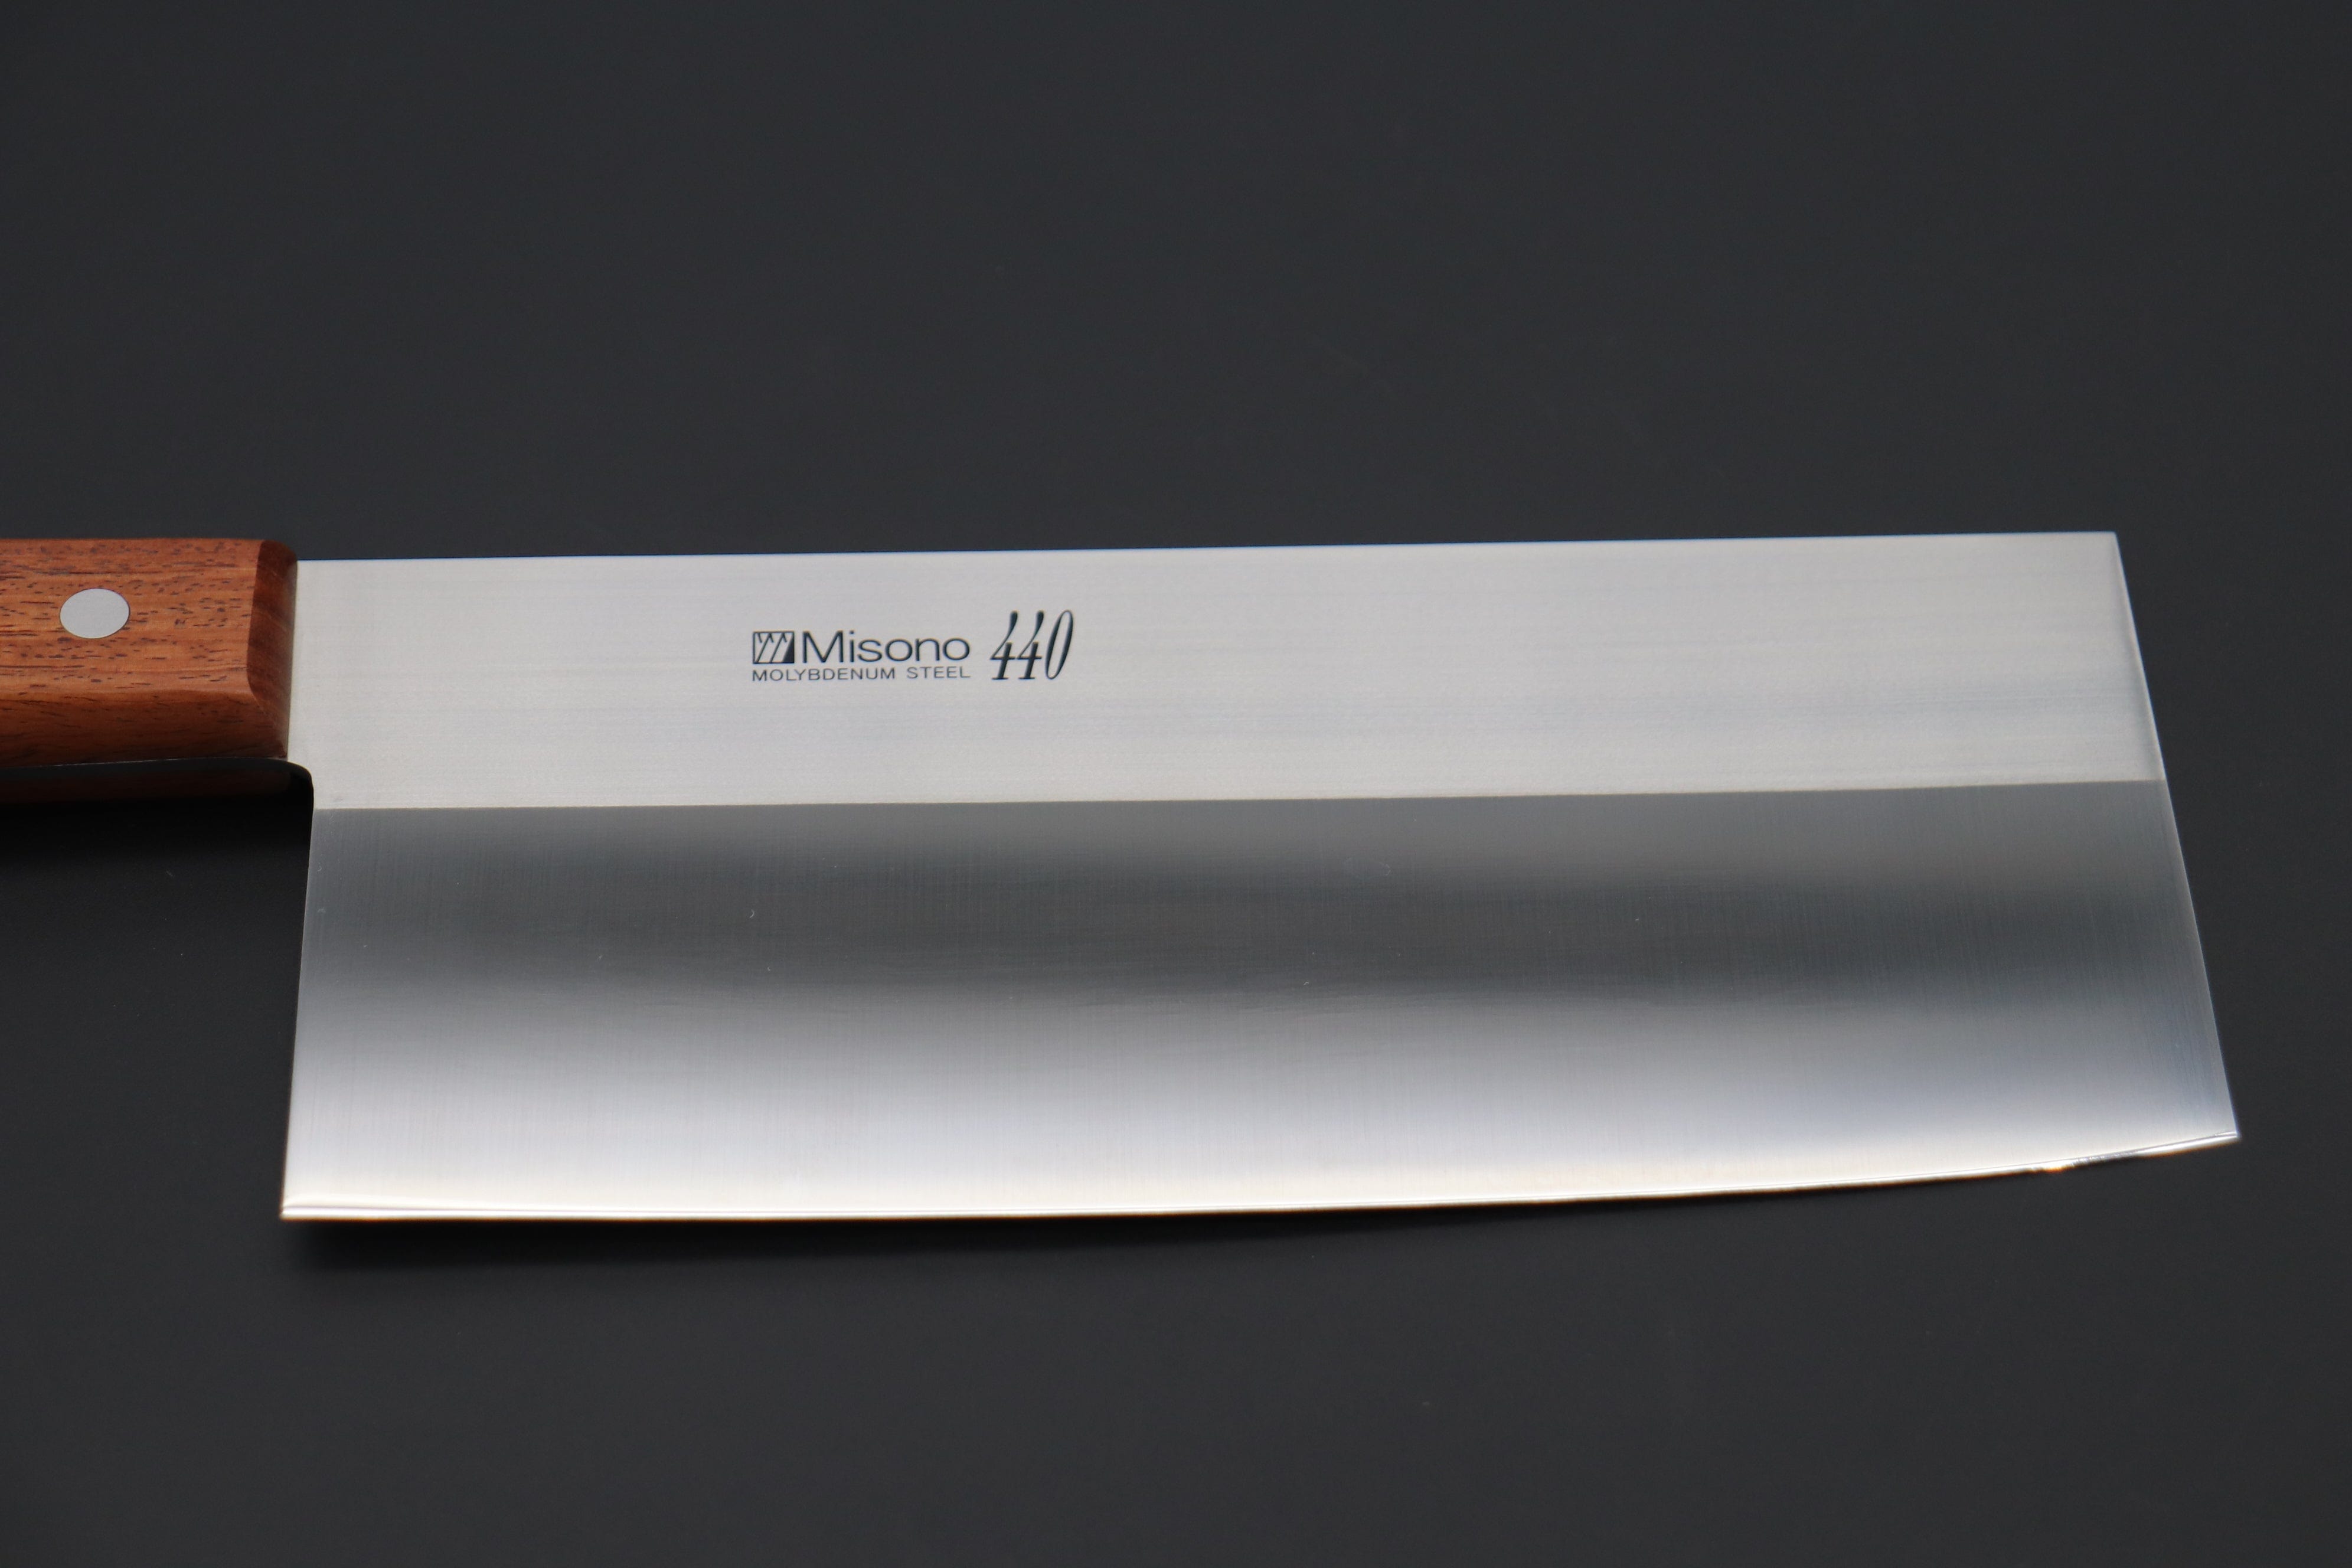 Japanese Steel Small Vegetable Cleaver Knife 3.7 inch Santoku